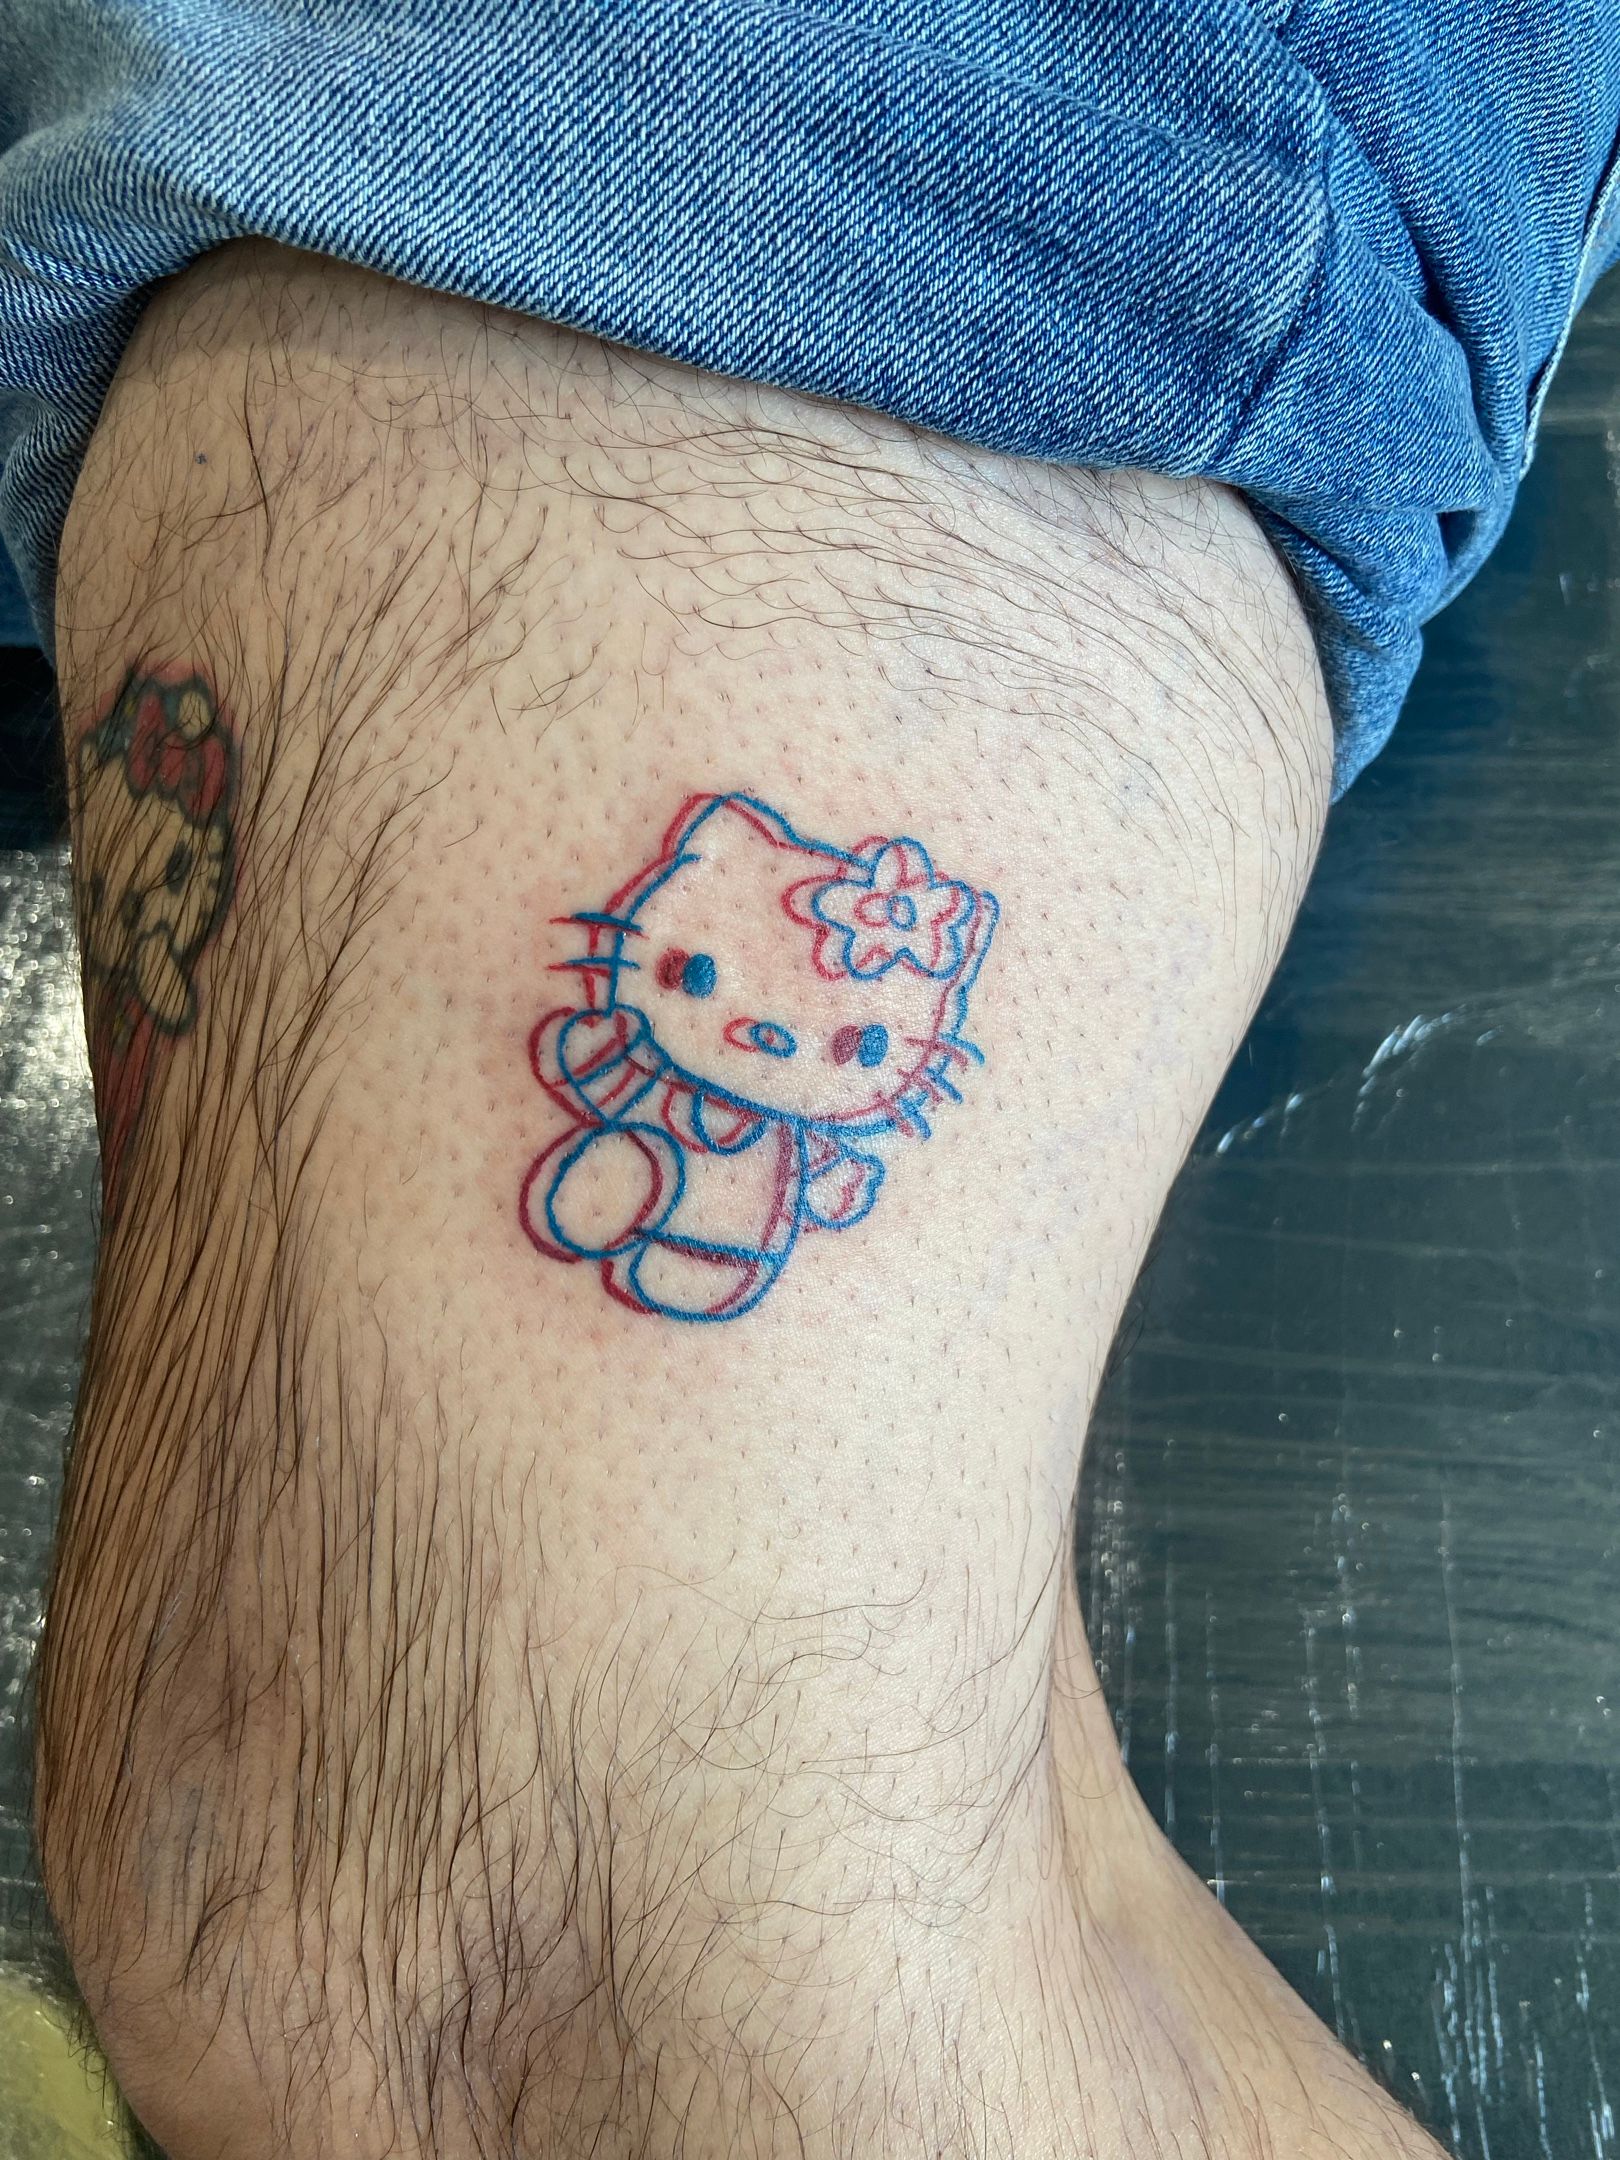 Paw prints & Hello Kitty tattoo